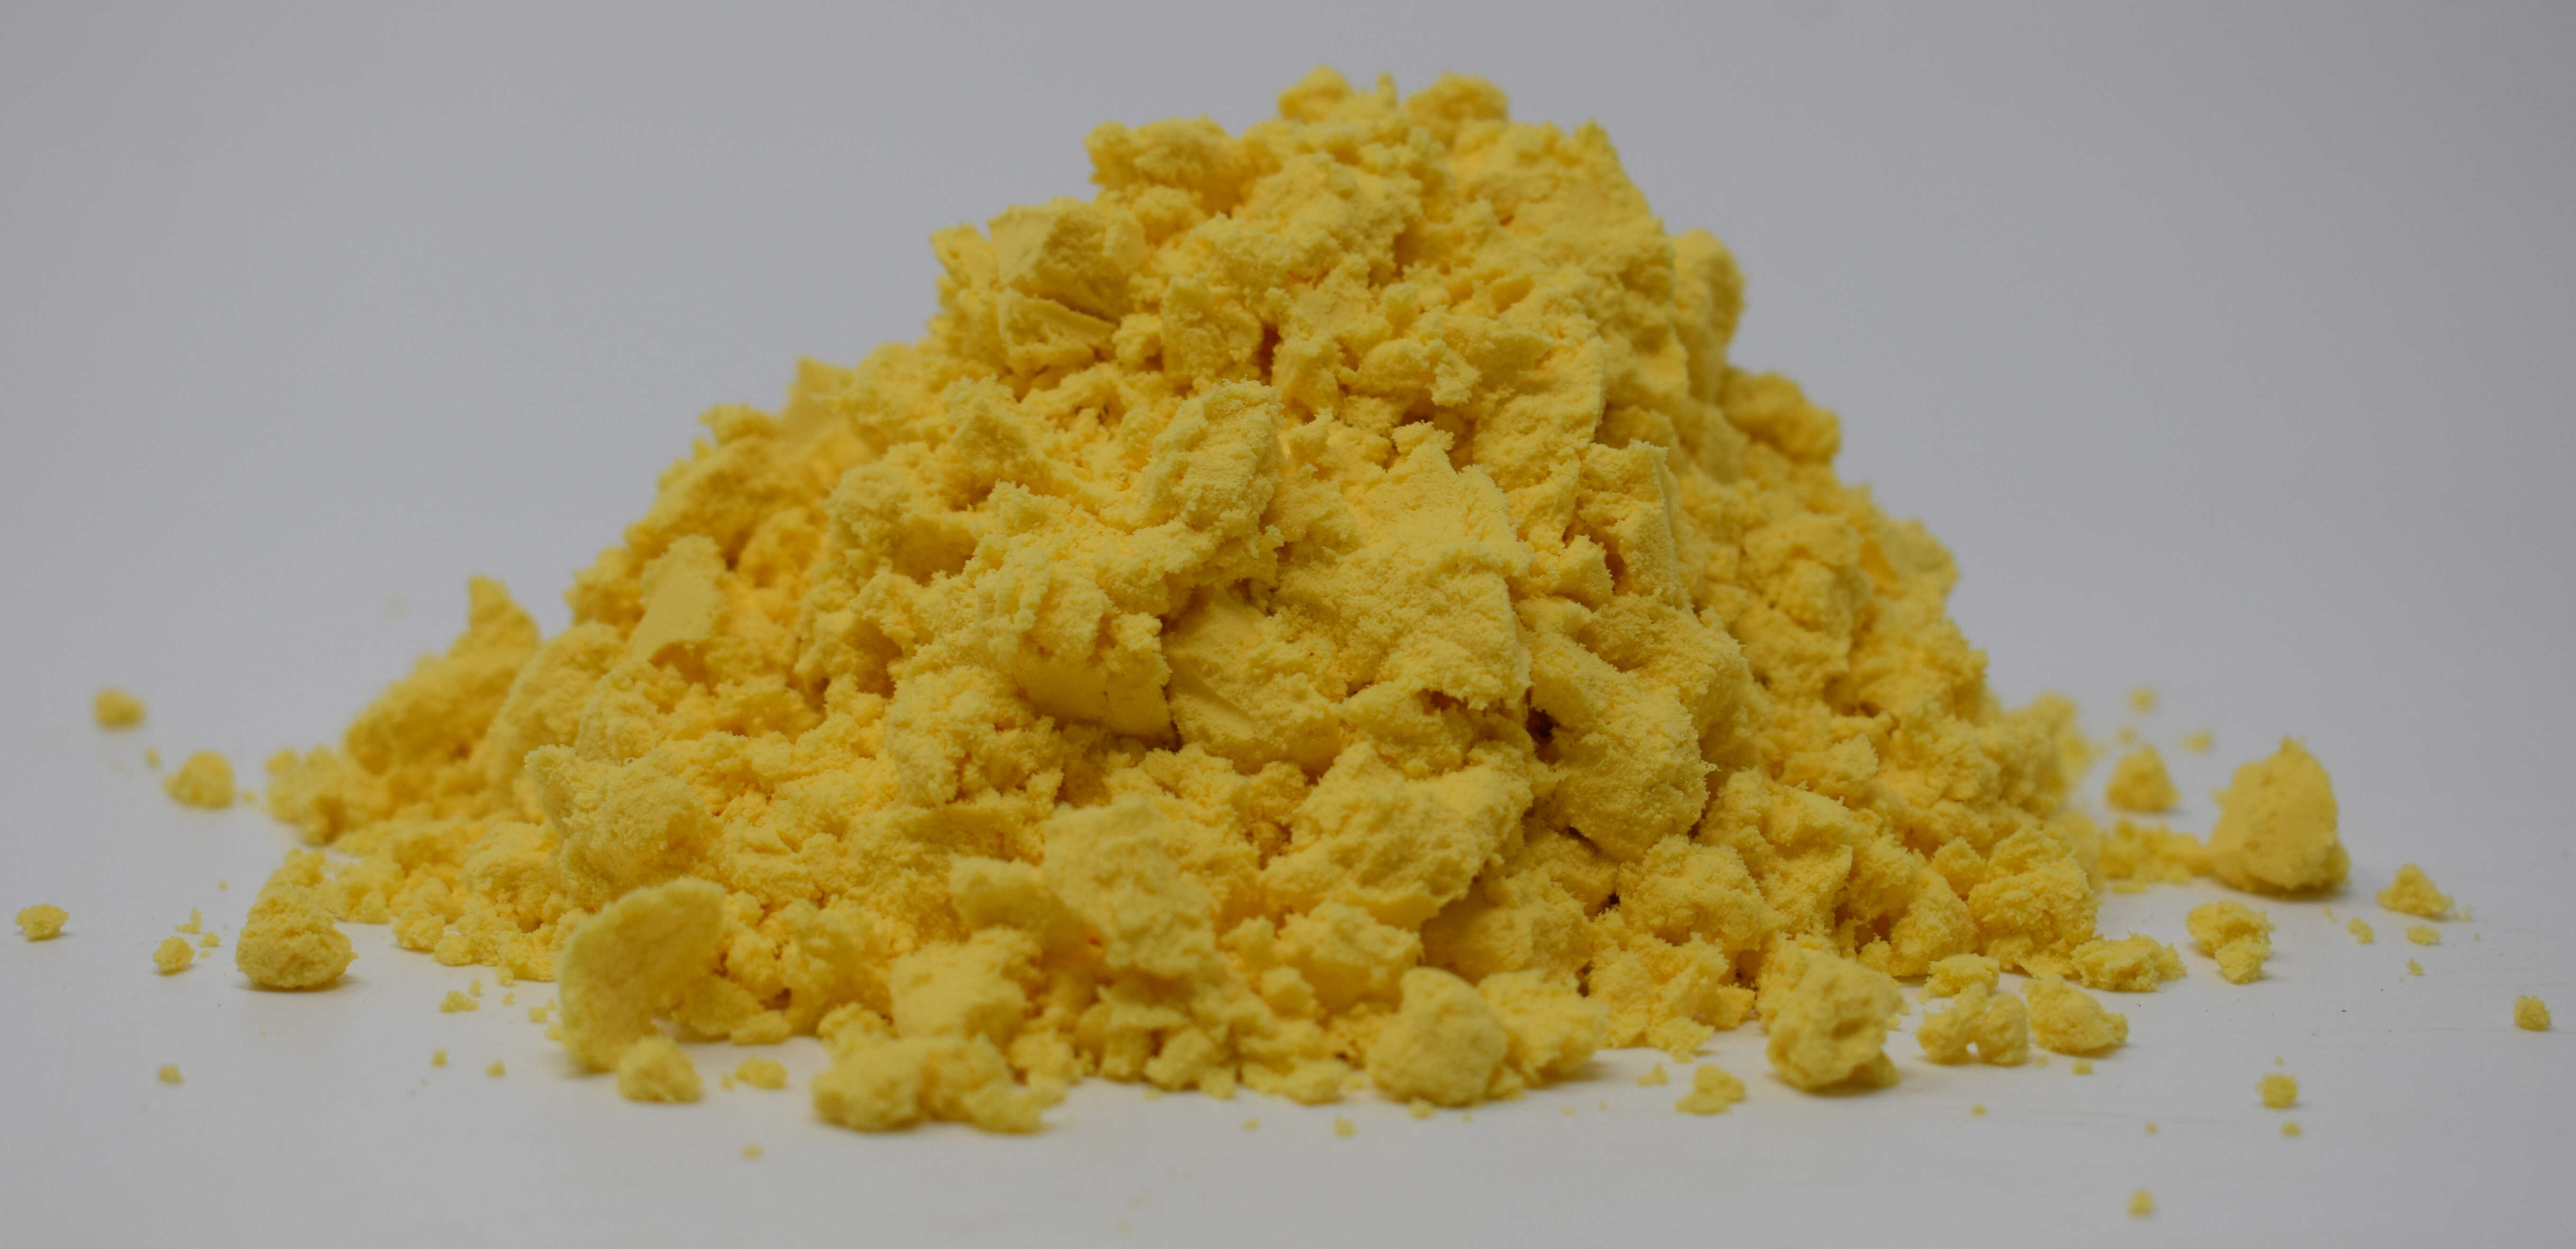 Egg Yolk Powder - Side Photo